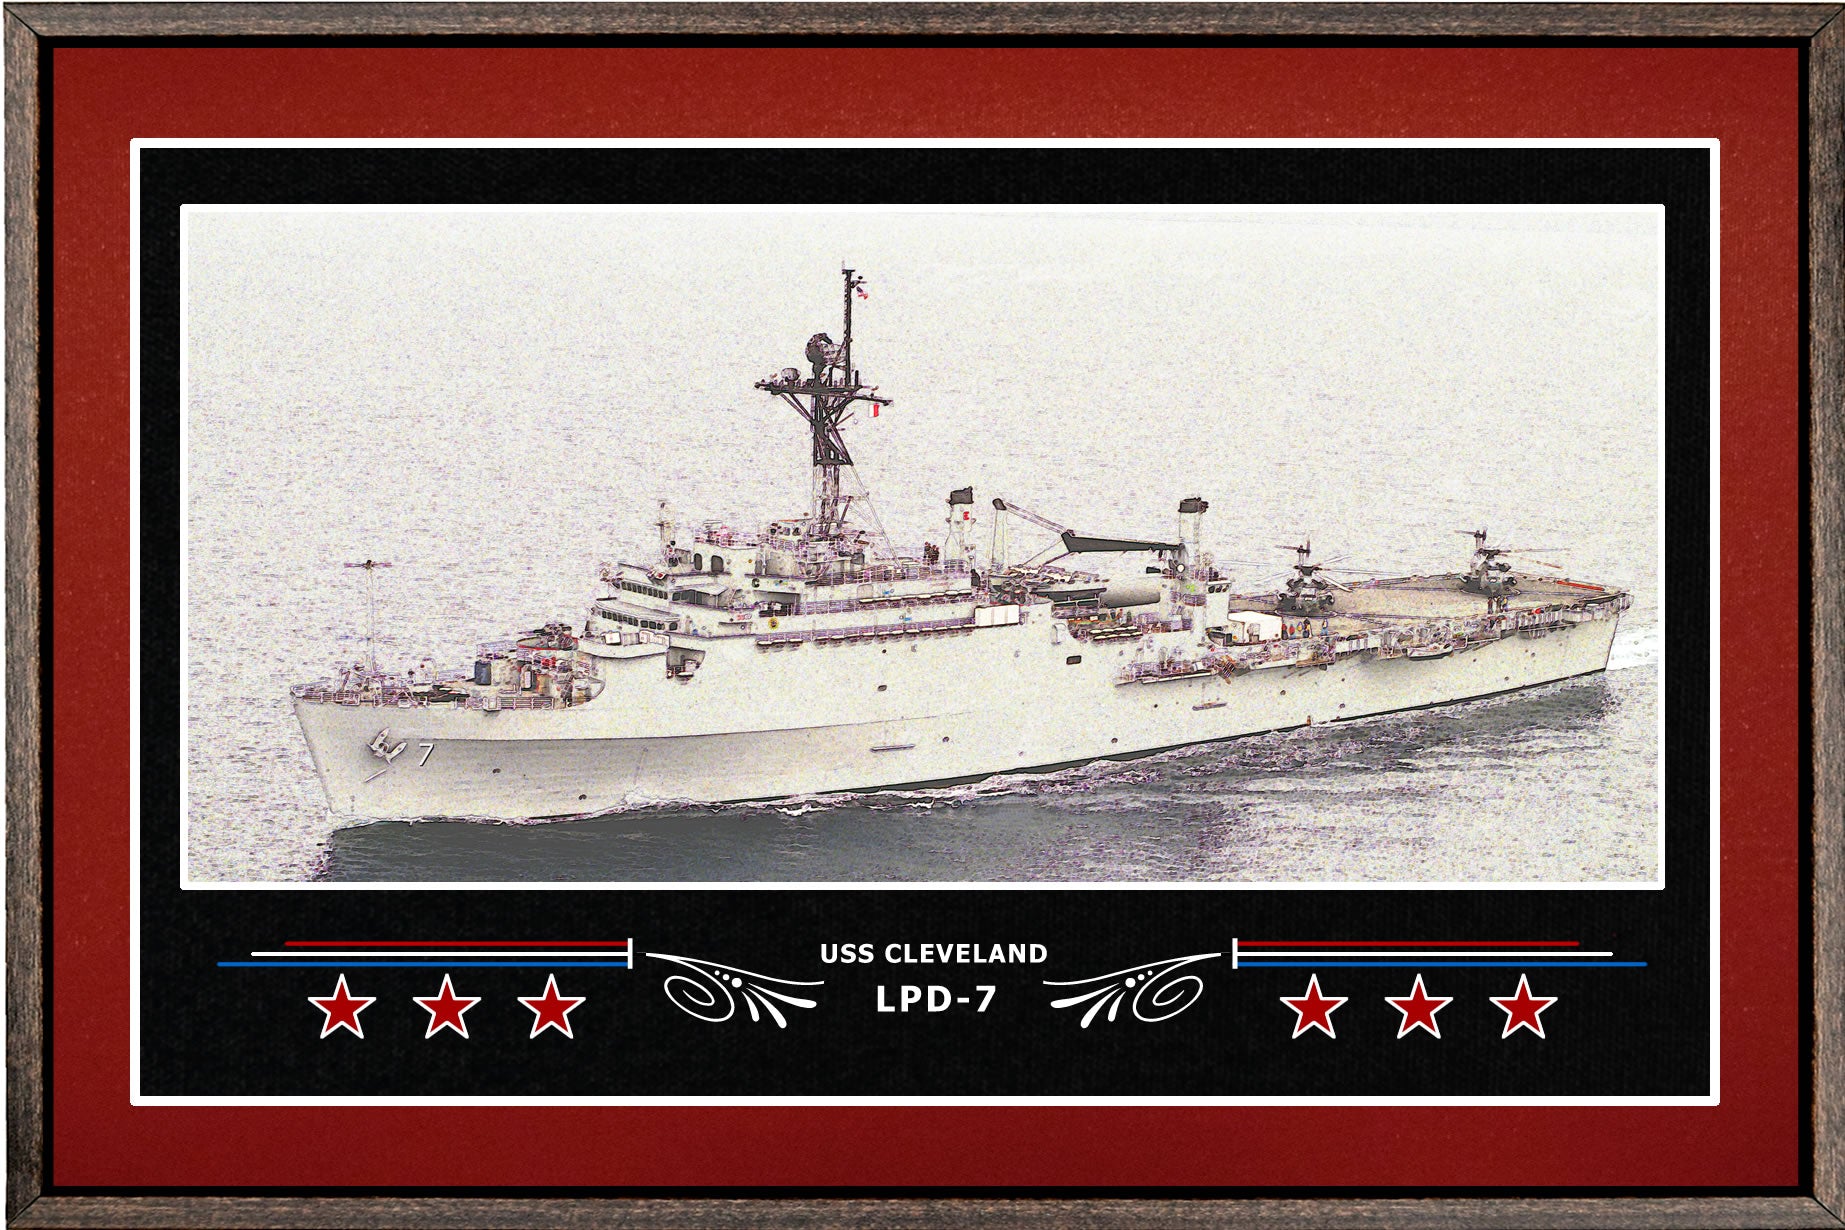 USS CLEVELAND LPD 7 BOX FRAMED CANVAS ART BURGUNDY